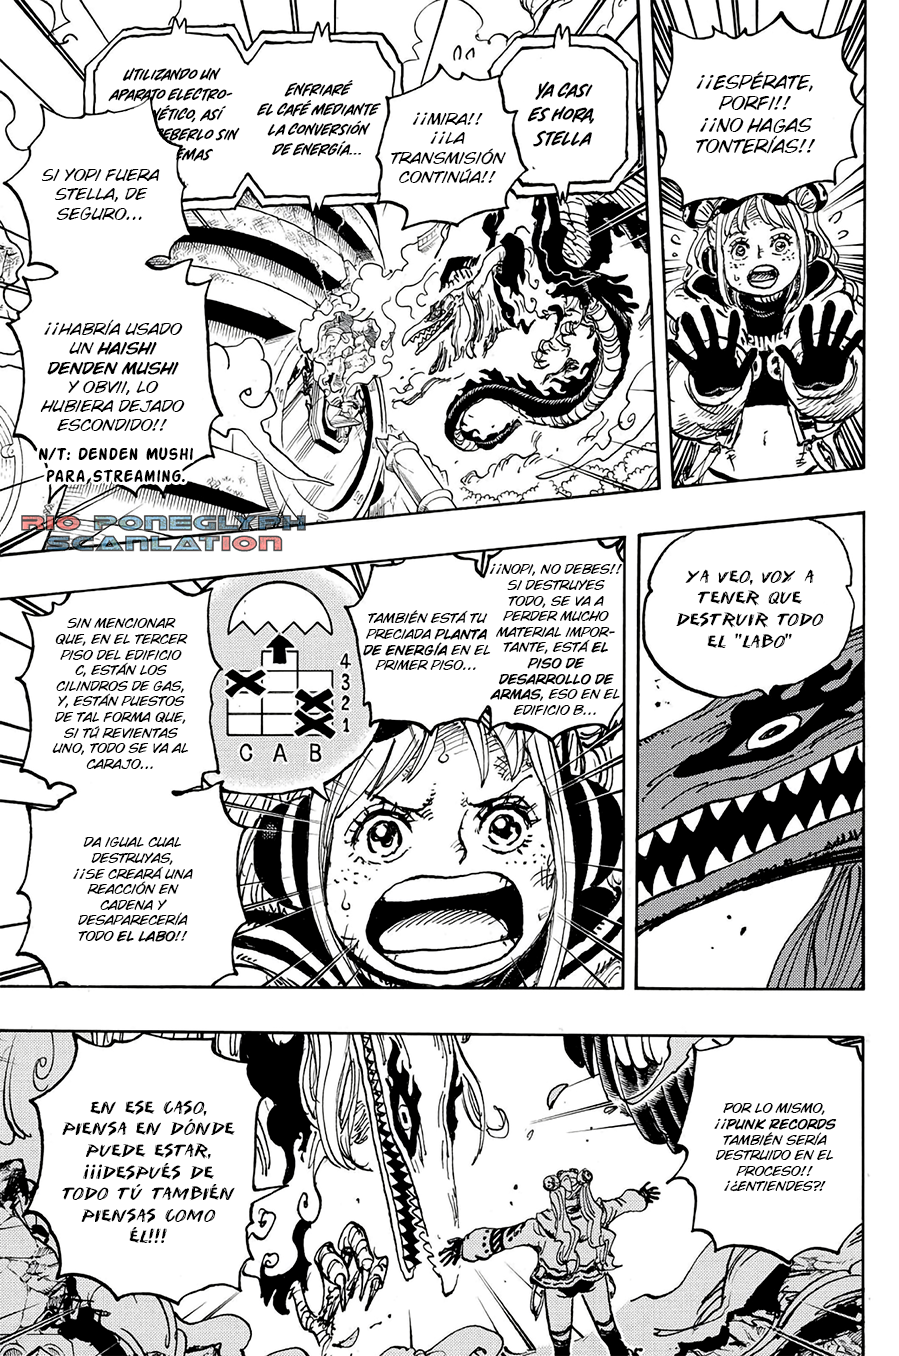 español - One Piece Manga 1112 [Español] [Rio Poneglyph Scans] 06-2